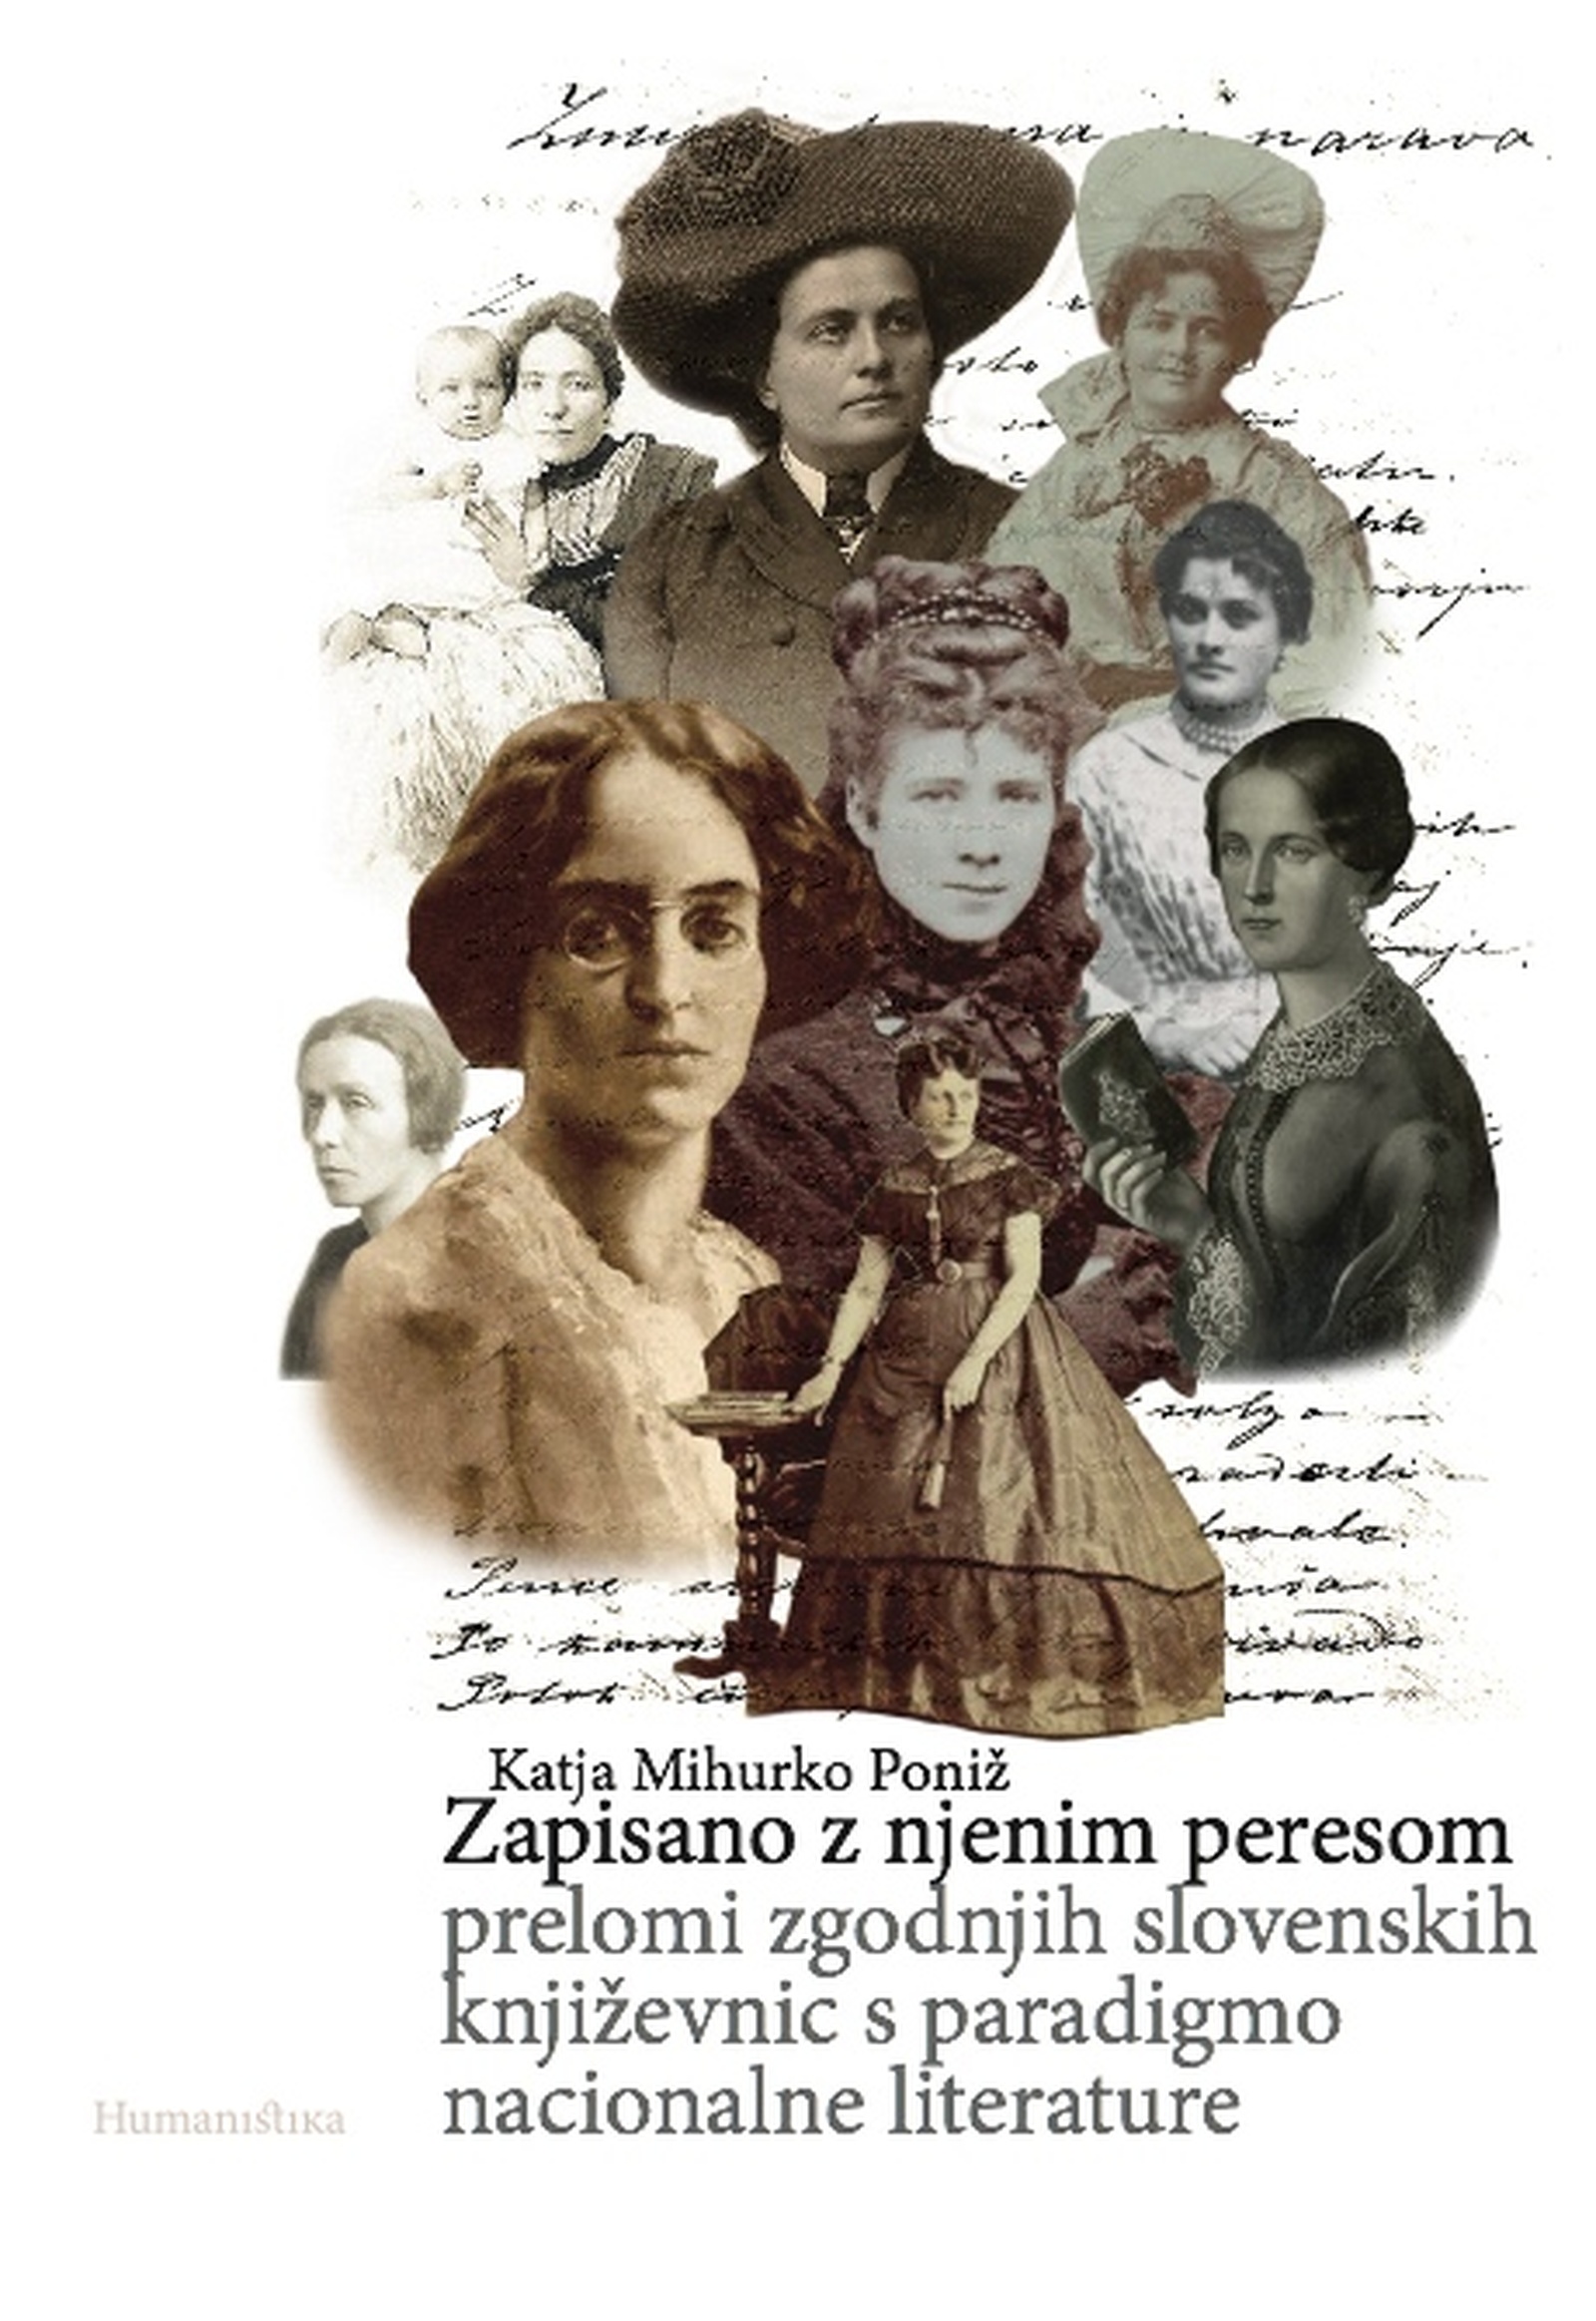 The presentation of the book Zapisano z njenim peresom: prelomi zgodnjih slovenskih književnic s paradigmo nacionalne literature